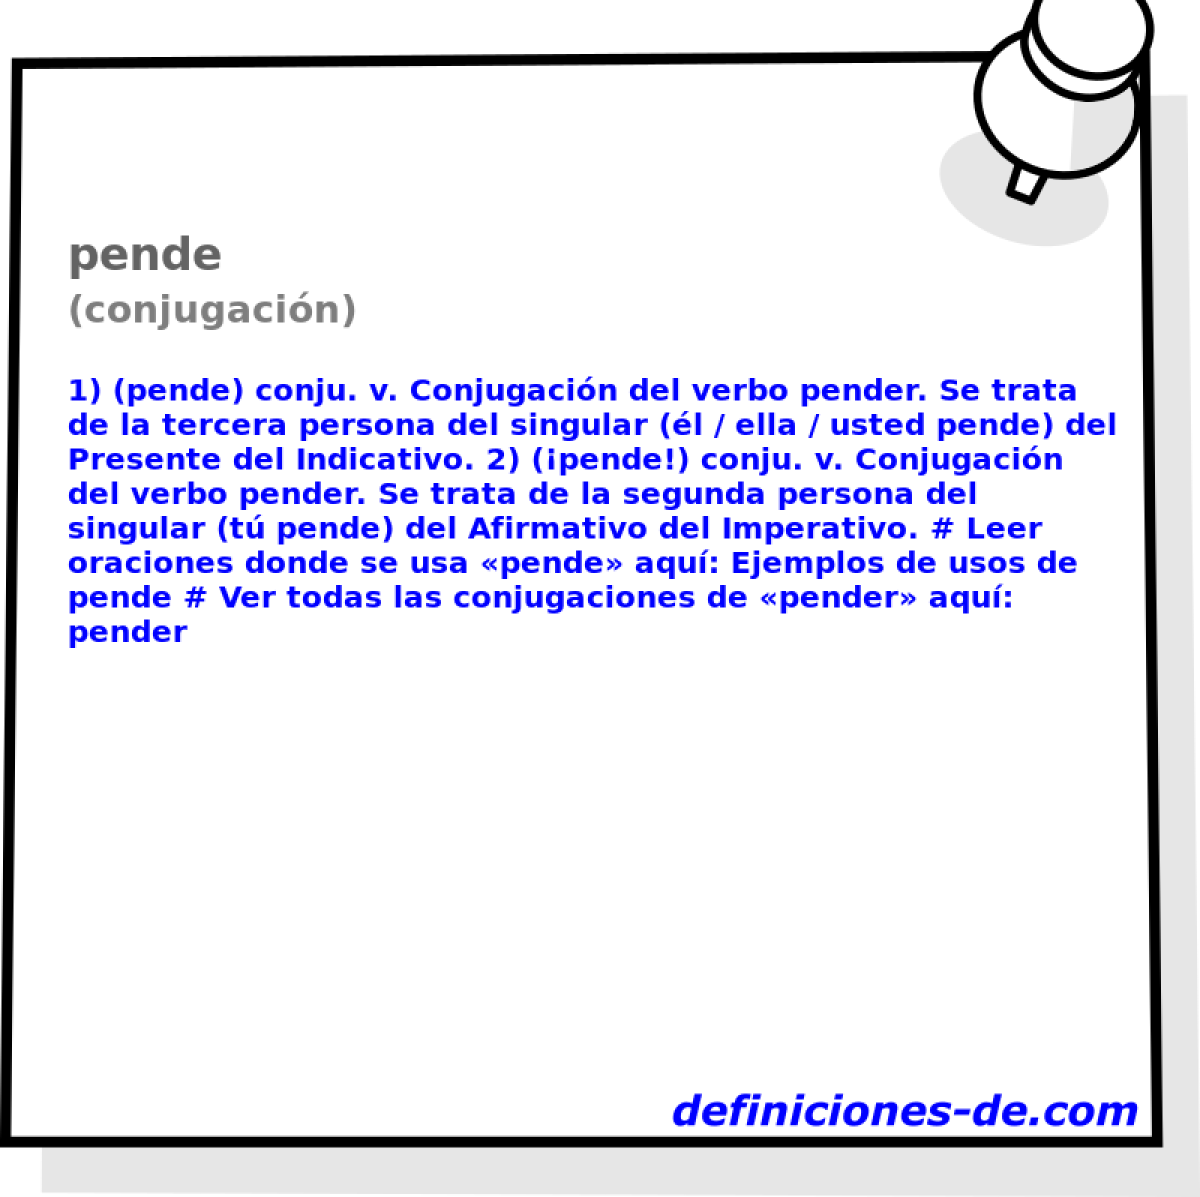 pende (conjugacin)